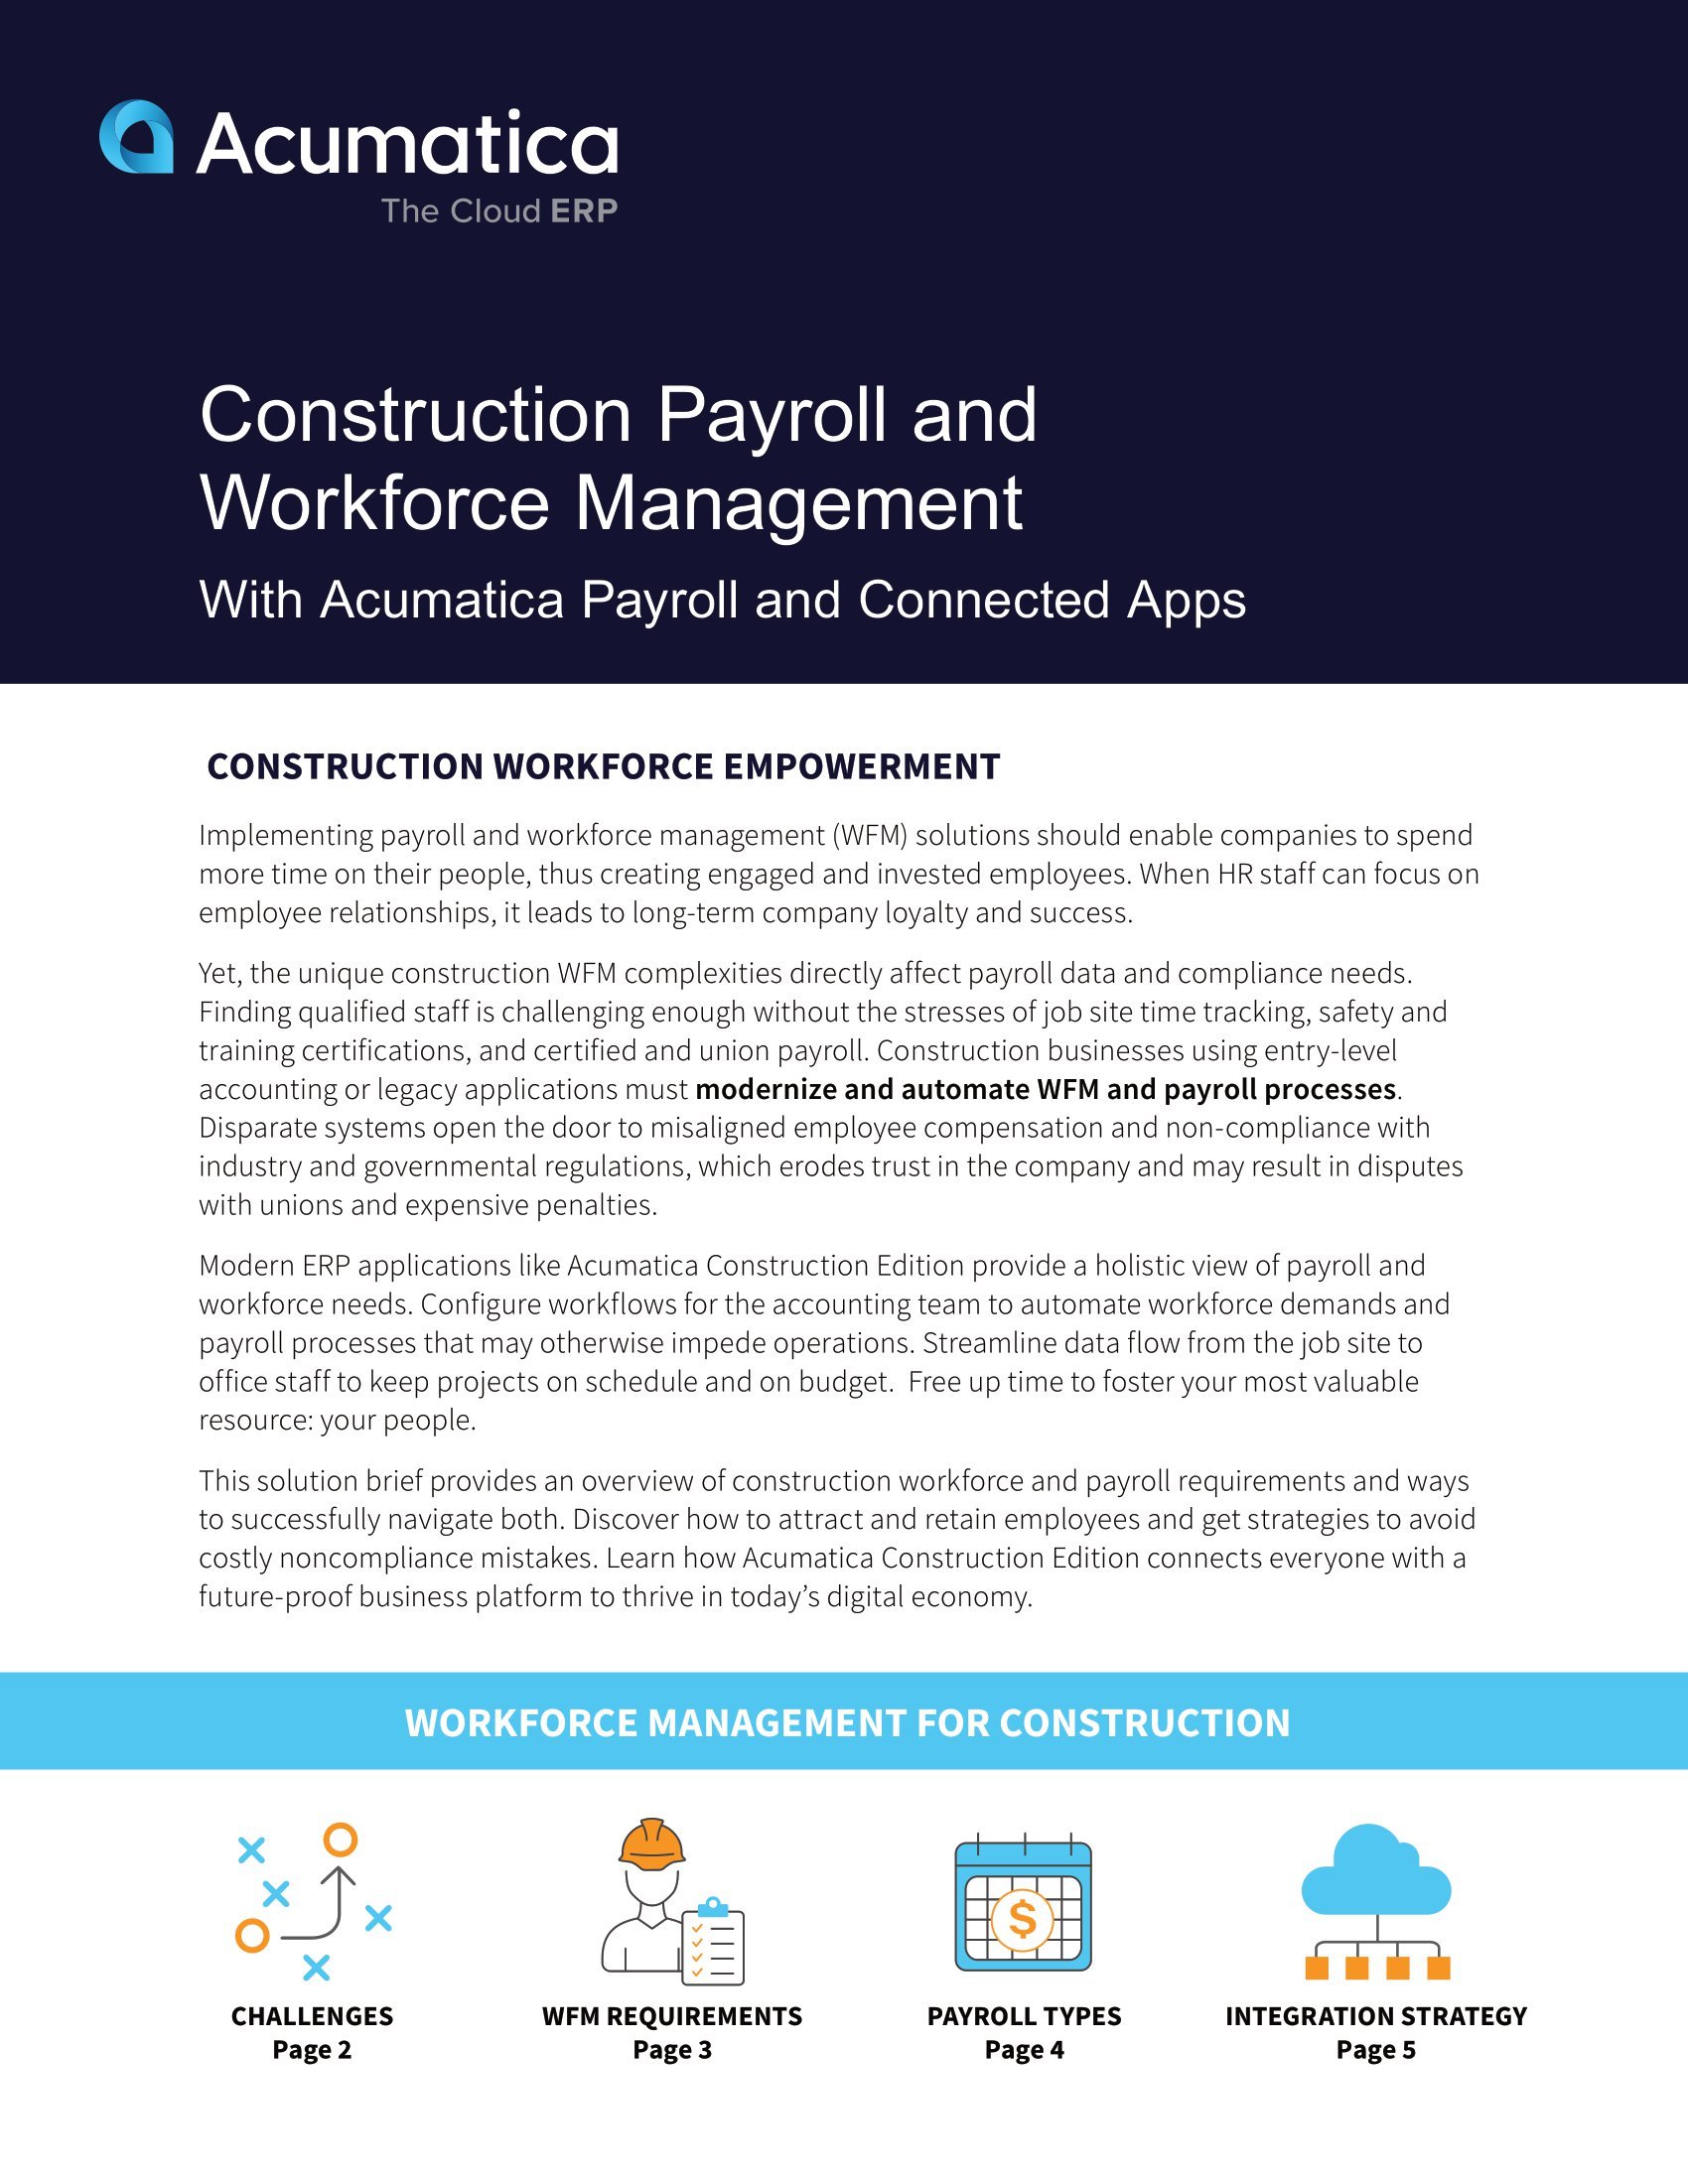 Cómo Acumatica Construction Edition ayuda a las empresas de construcción a superar los desafíos comunes de la fuerza laboral y la nómina